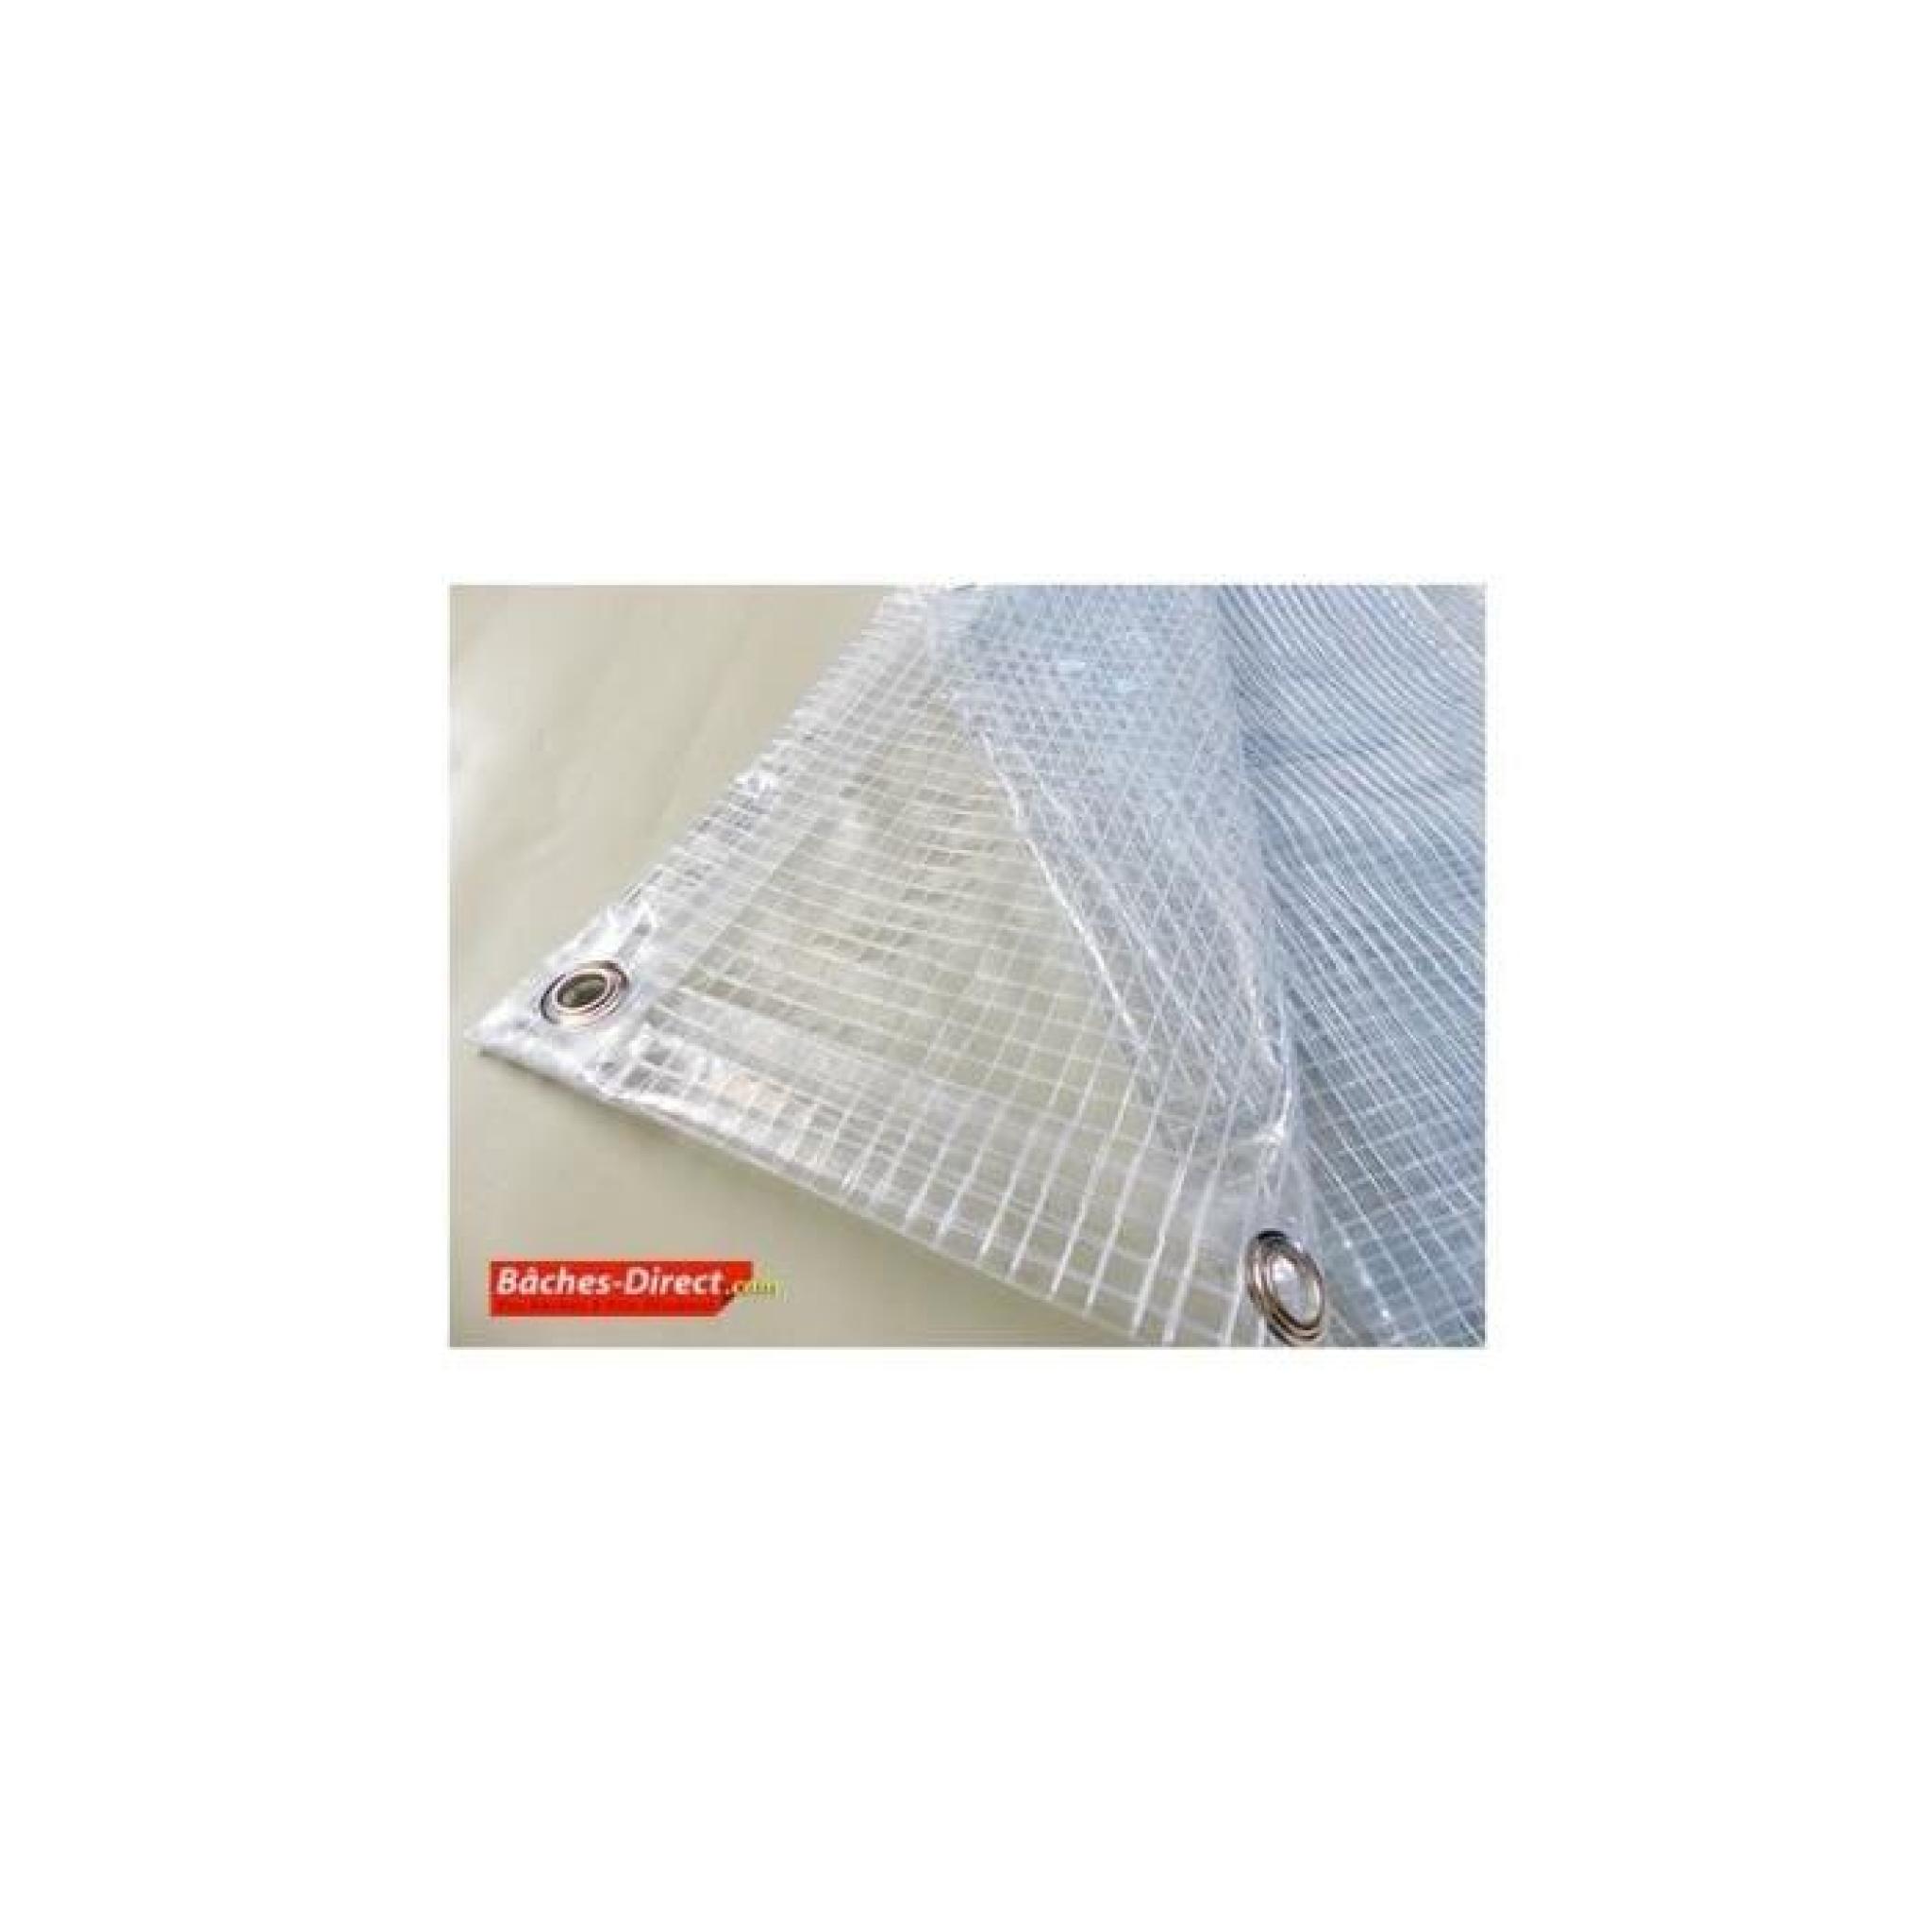 BACHES DIRECT - Bâche Pergola 400 g/m² - 2.1 x 3 m - bache transparente pour toile de pergola - bache imperméable Transparente Armée